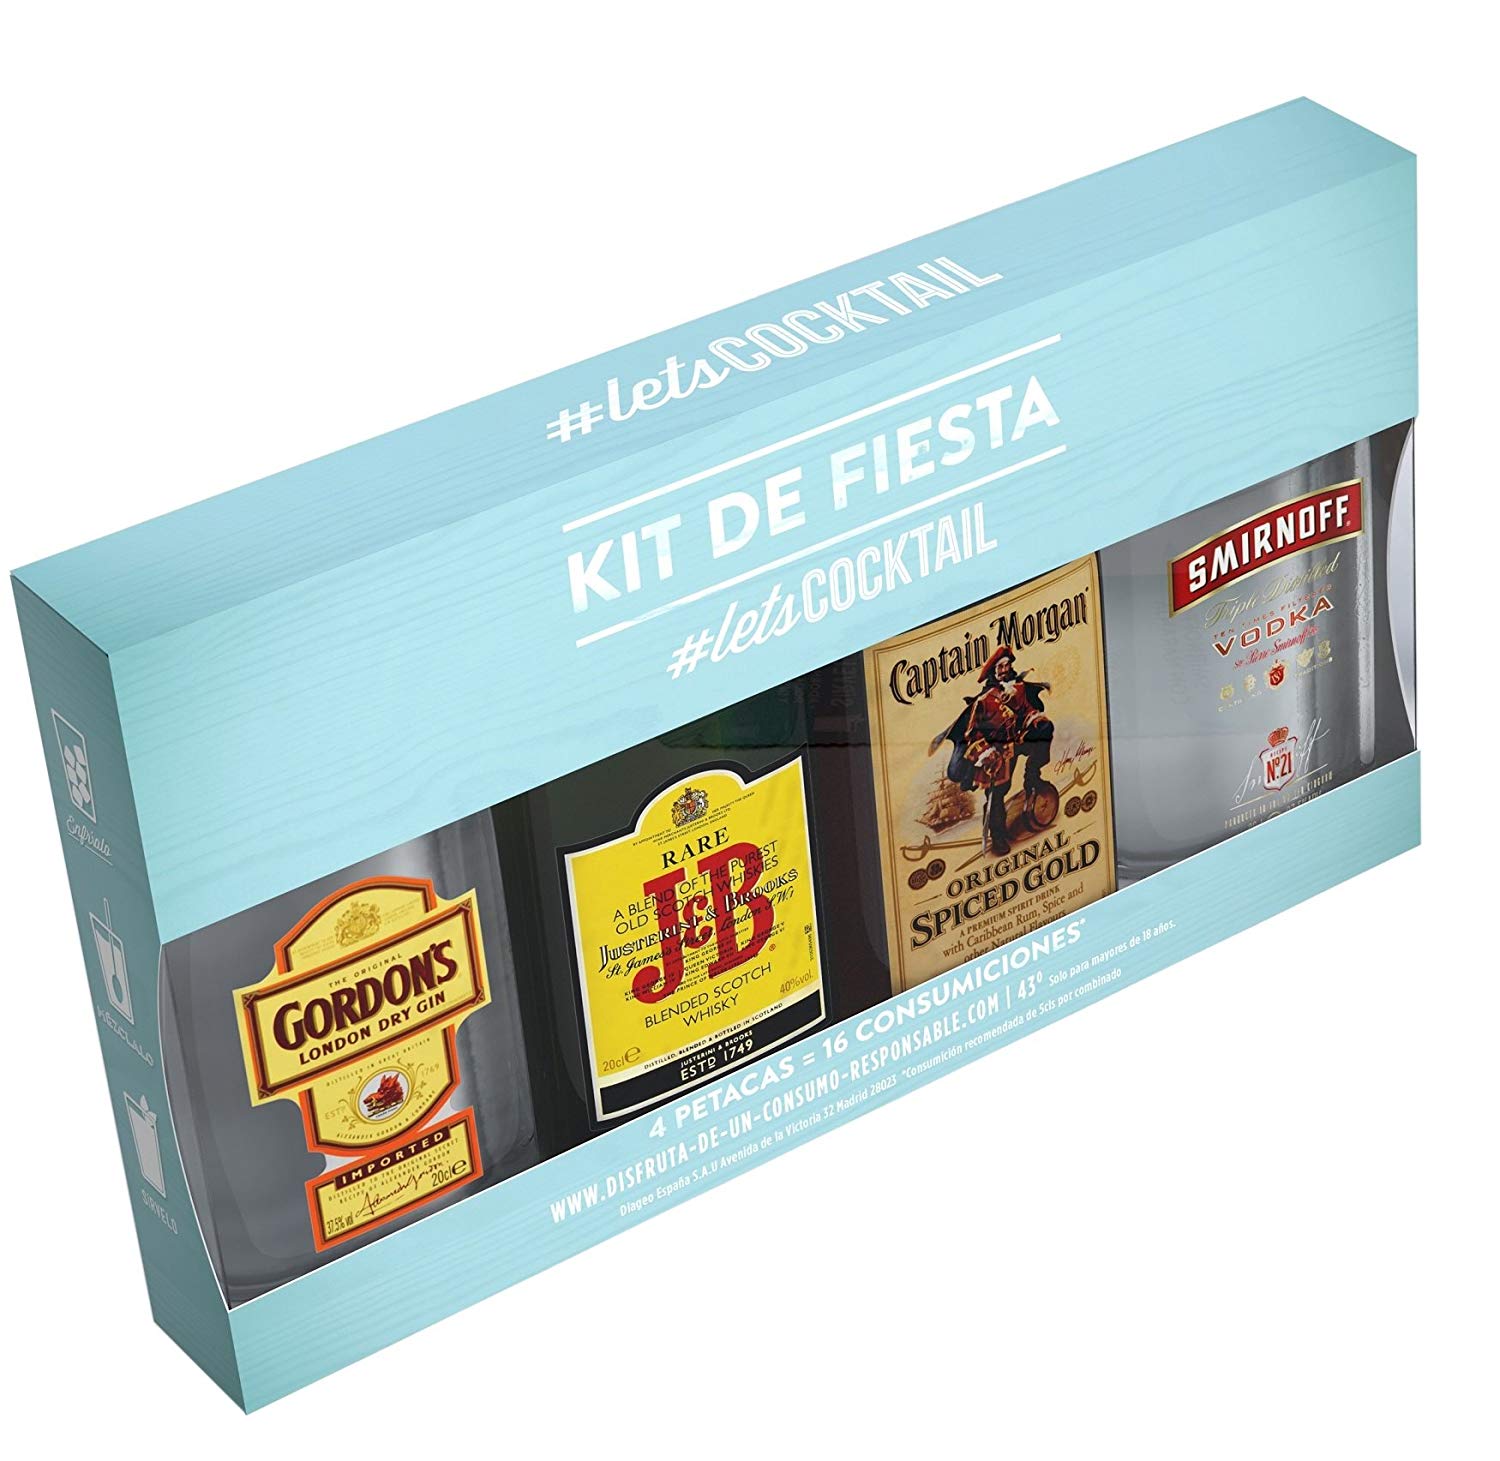 Kit de bebidas para fiesta solo 12,3€